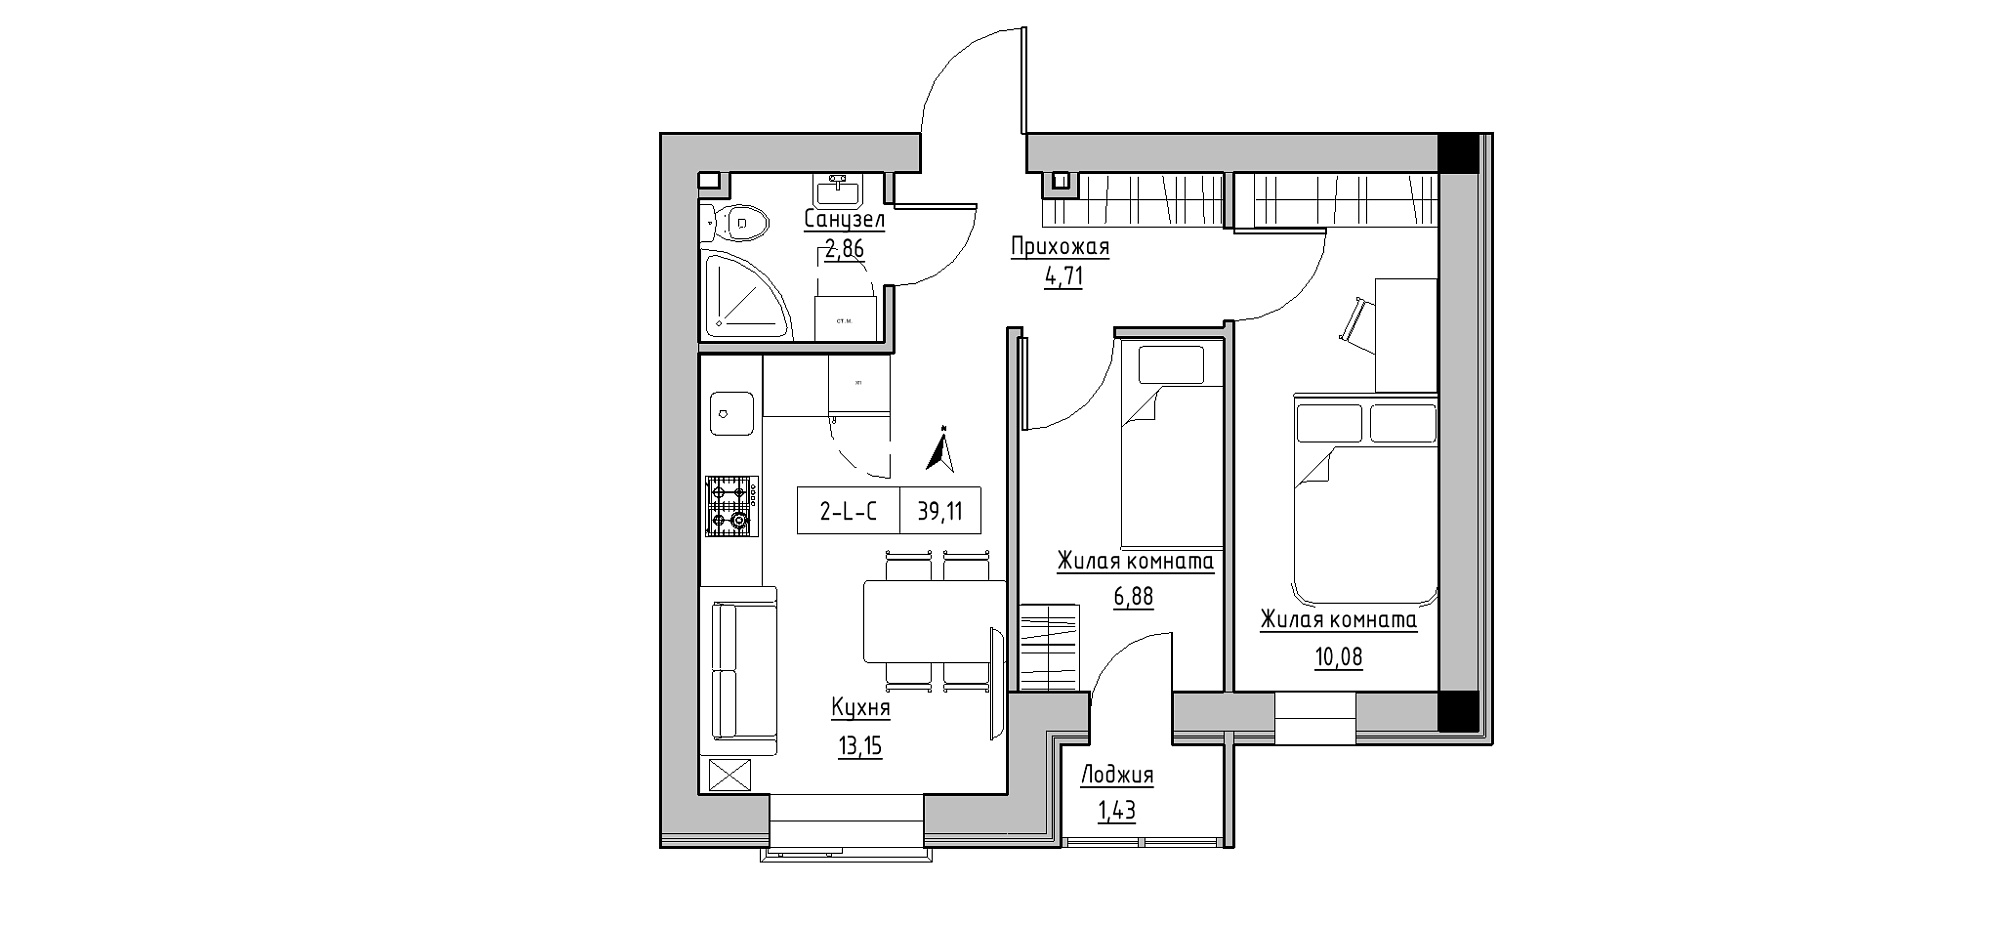 Планировка 2-к квартира площей 39.11м2, KS-020-01/0005.